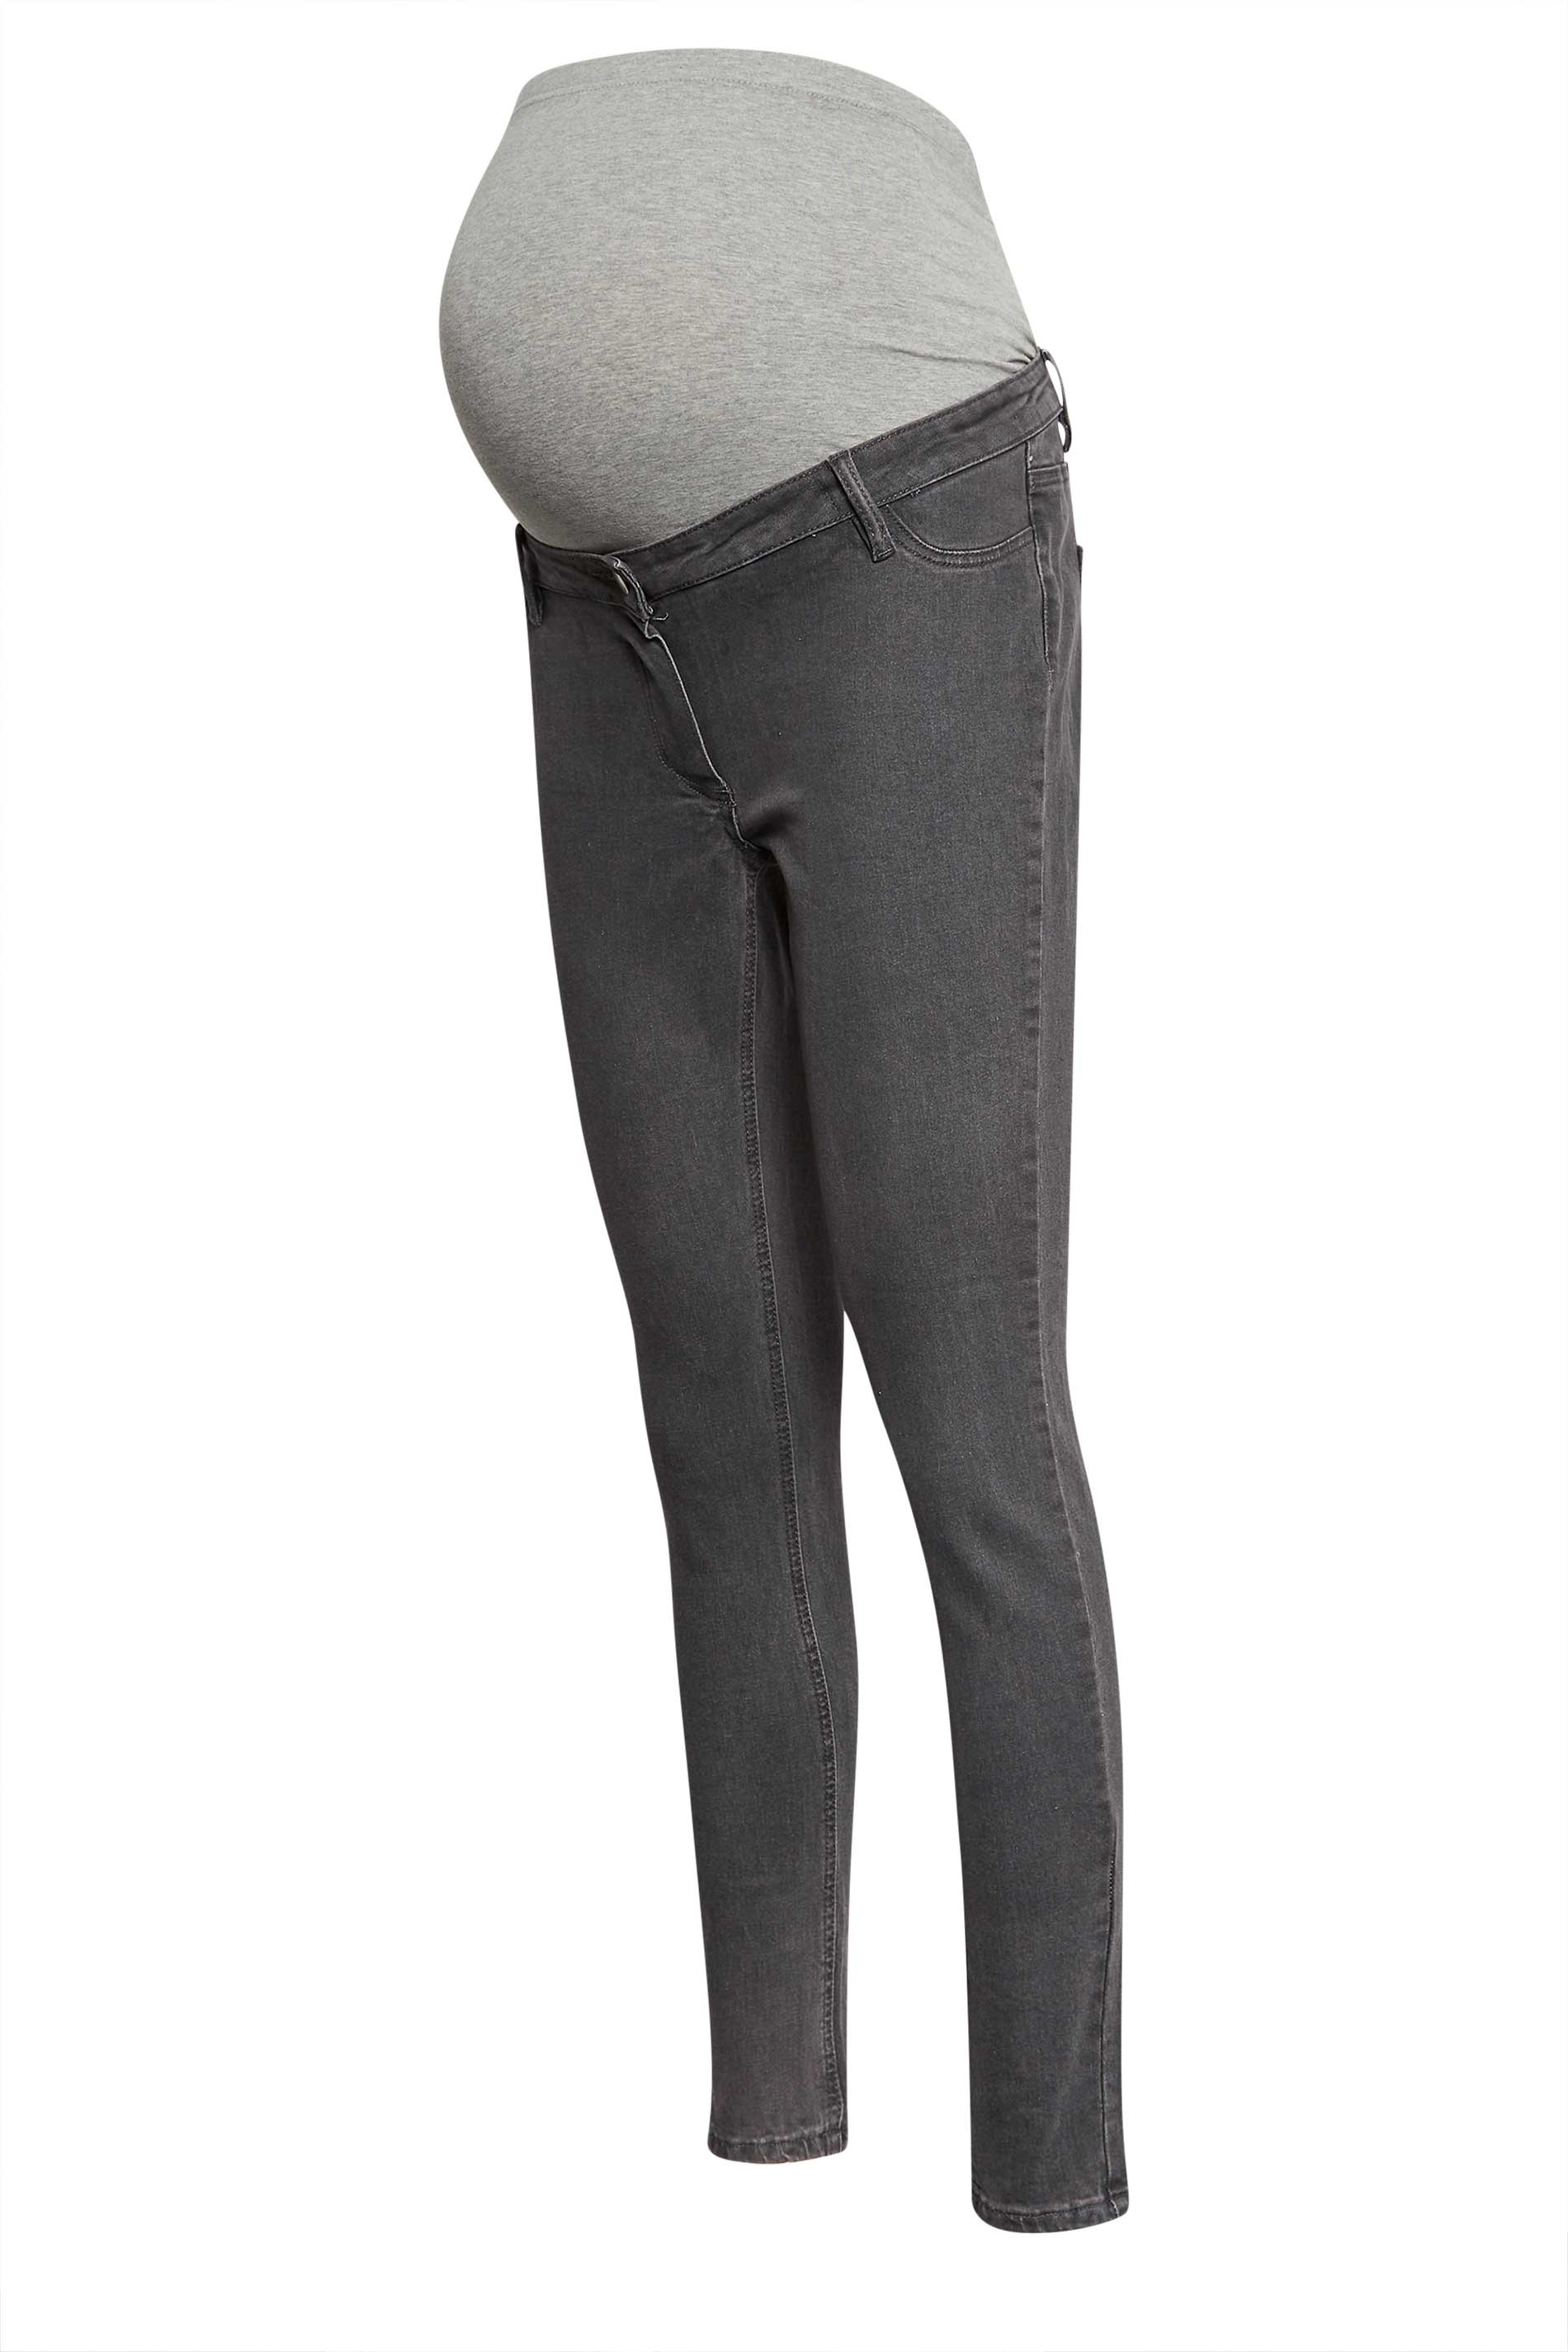 Buy Tall Sara Long Skinny Maternity Pant in Canada at SevenWomen